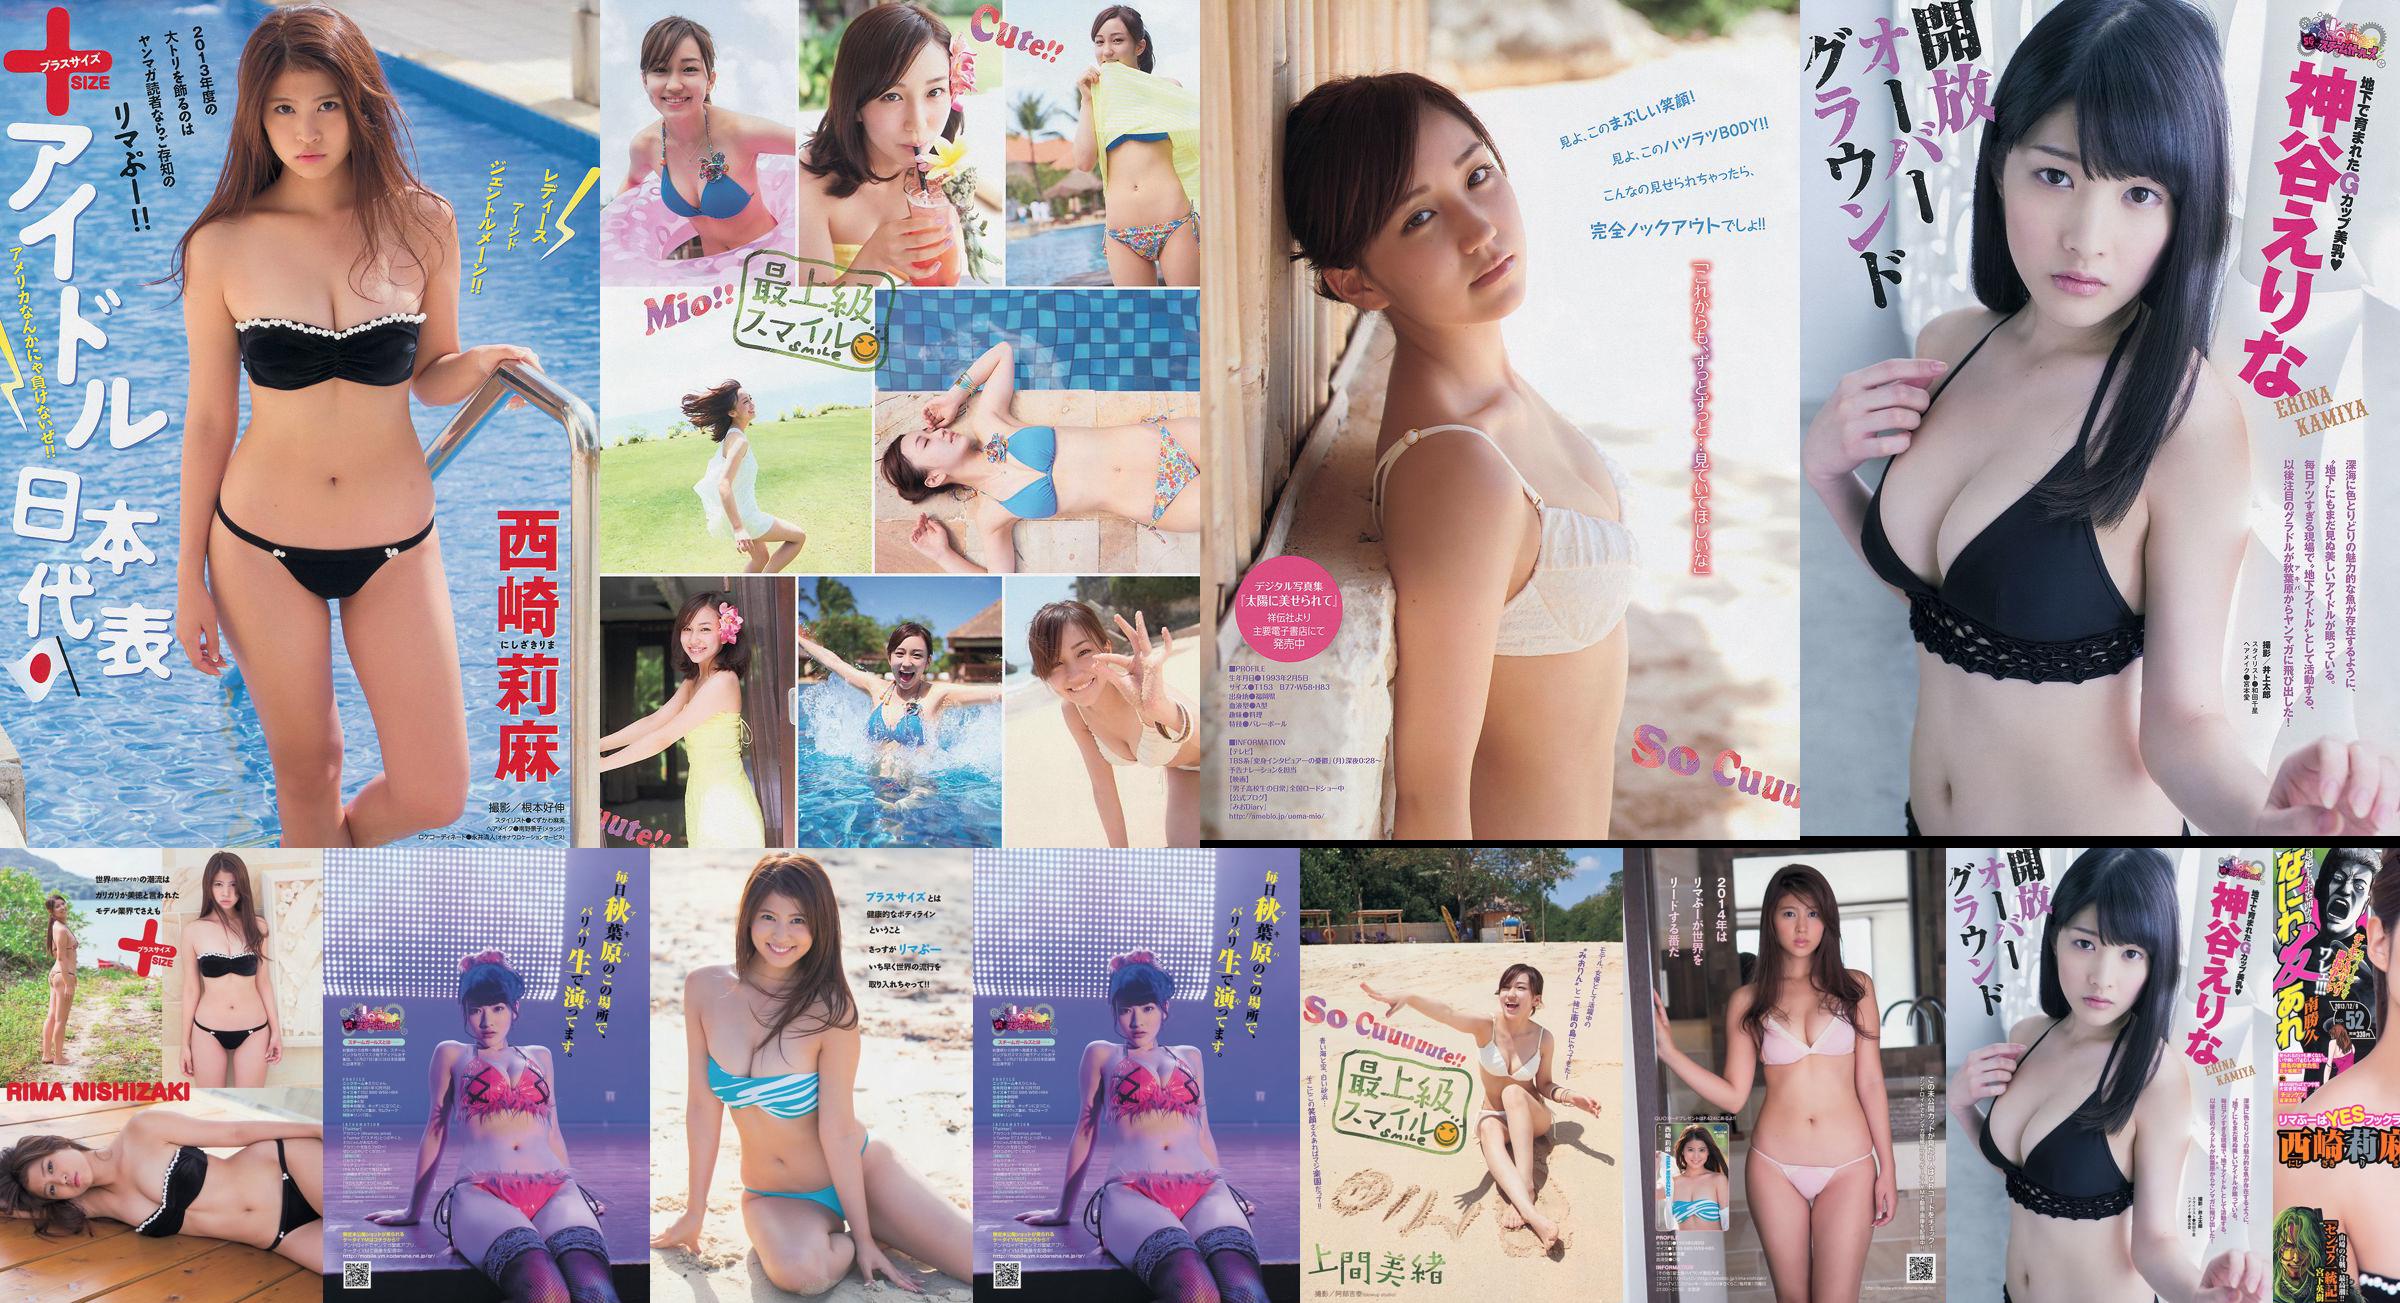 [Young Magazine] Rima Nishizaki Mio Uema Erina Kamiya 2013 No.52 Photo Moshi No.c4565a 第20頁